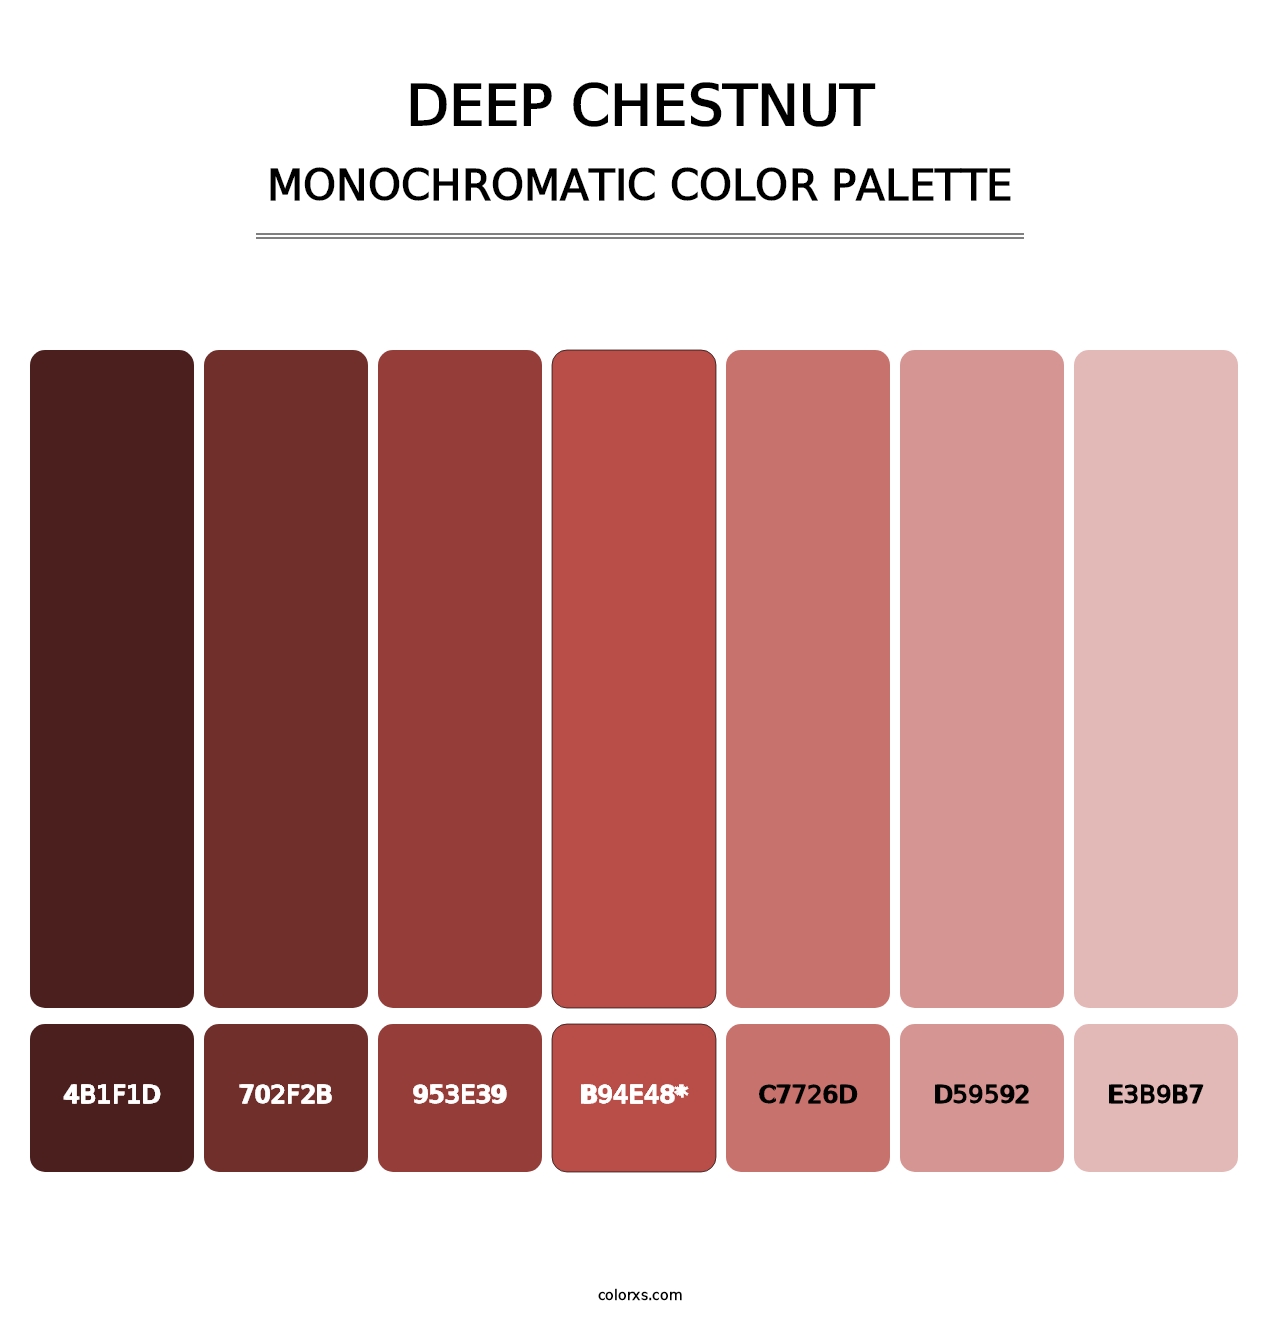 Deep Chestnut - Monochromatic Color Palette